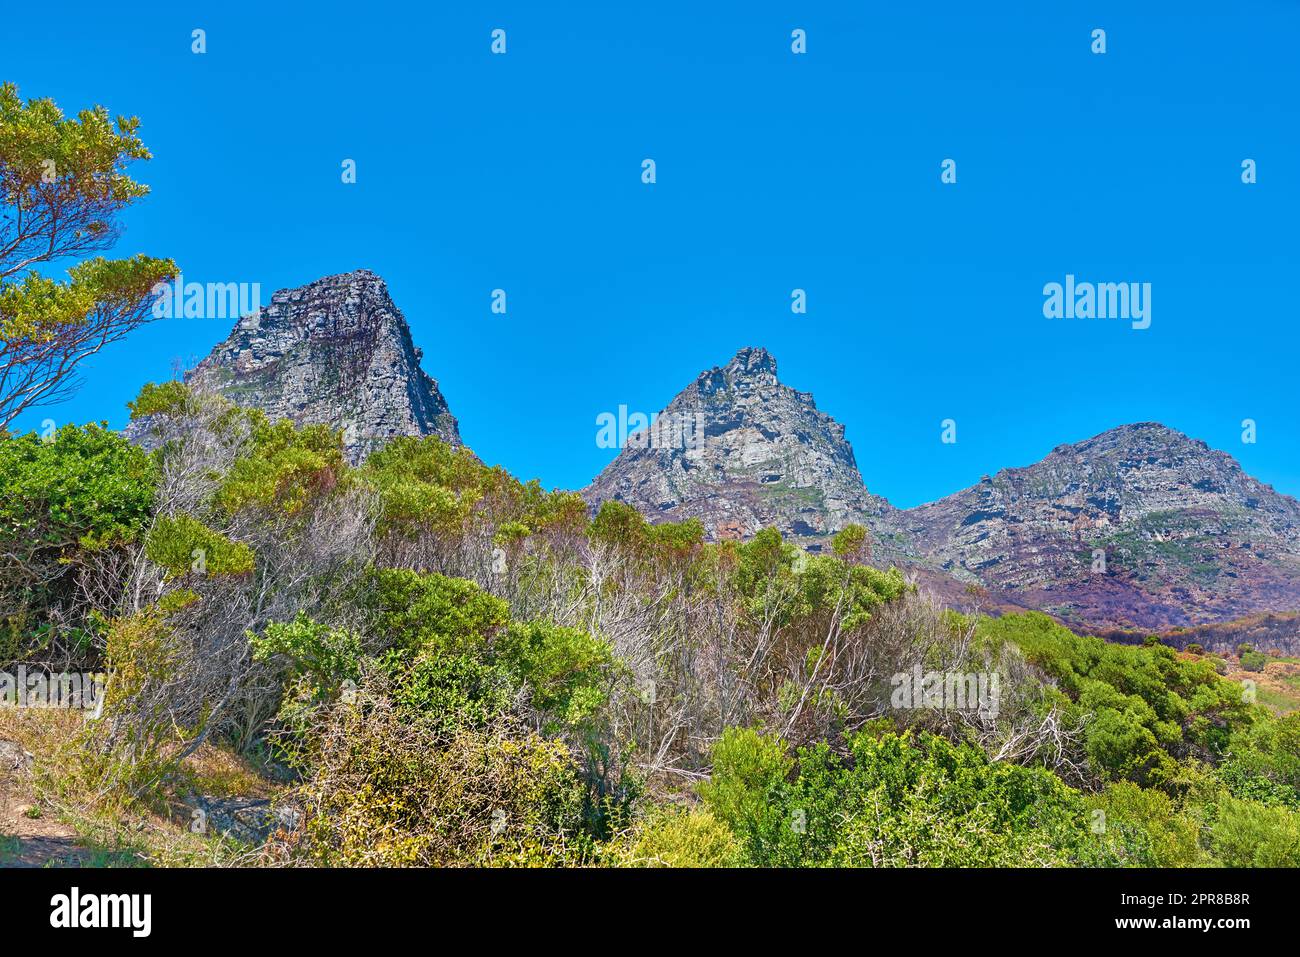 Vue sur les montagnes des douze Apôtres au Cap, en Afrique du Sud, avec un ciel bleu et un espace de copie. Terrain de randonnée pittoresque et escarpé avec arbres, buissons et arbustes en pleine croissance. Voyages et tourisme Banque D'Images